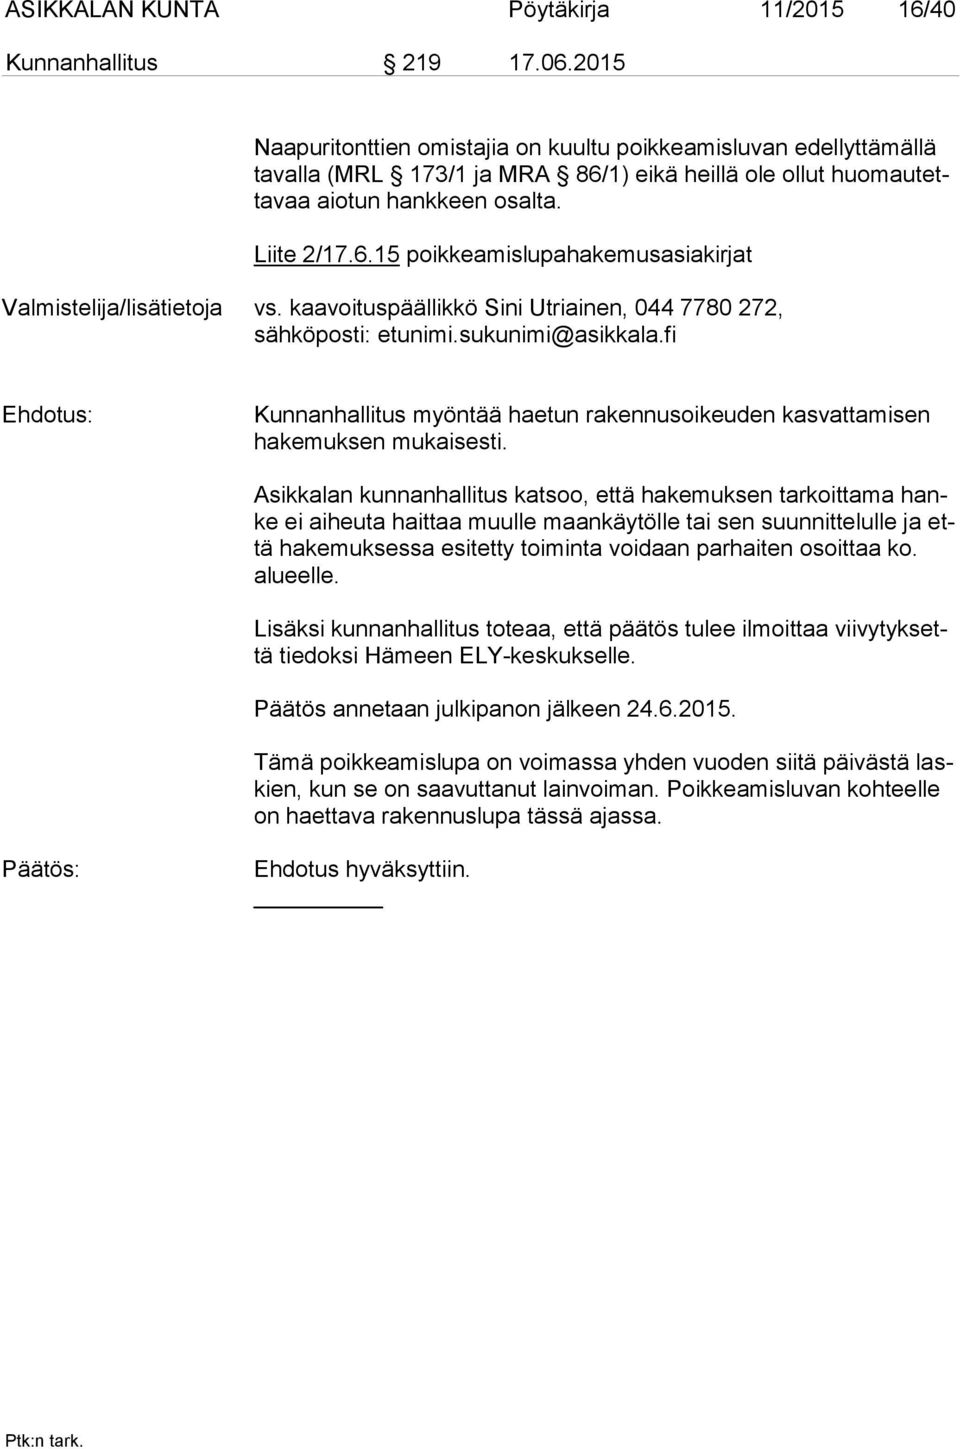 kaavoituspäällikkö Sini Utriainen, 044 7780 272, sähköposti: etunimi.sukunimi@asikkala.fi Ehdotus: Kunnanhallitus myöntää haetun rakennusoikeuden kasvattamisen ha ke muk sen mukaisesti.